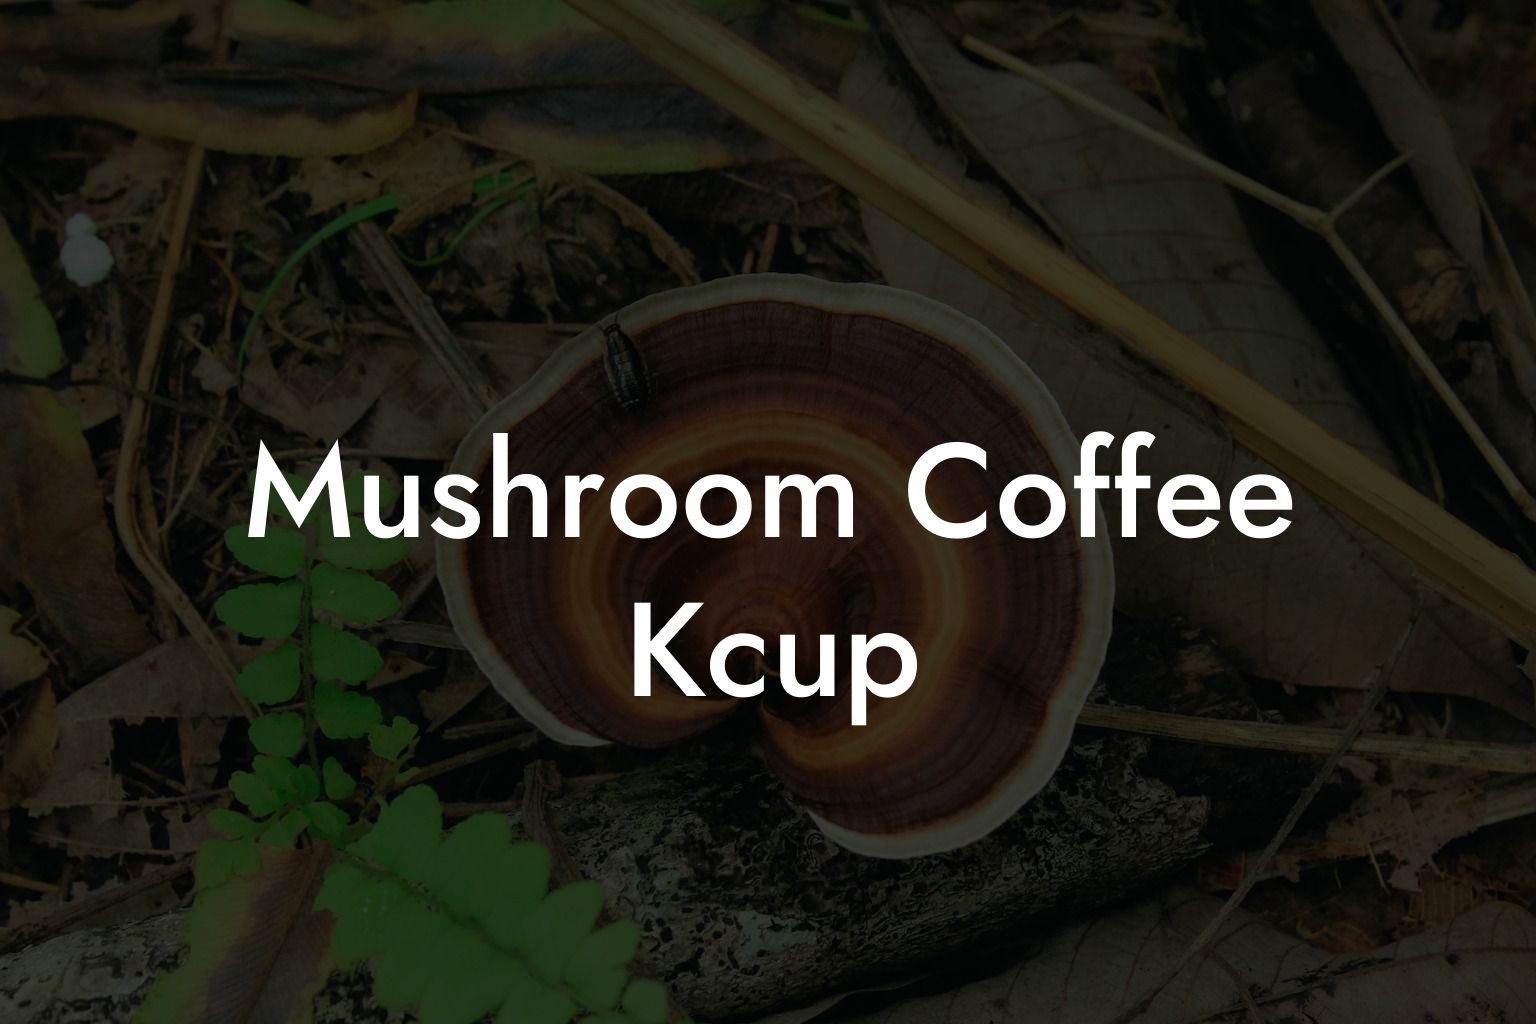 Mushroom Coffee Kcup